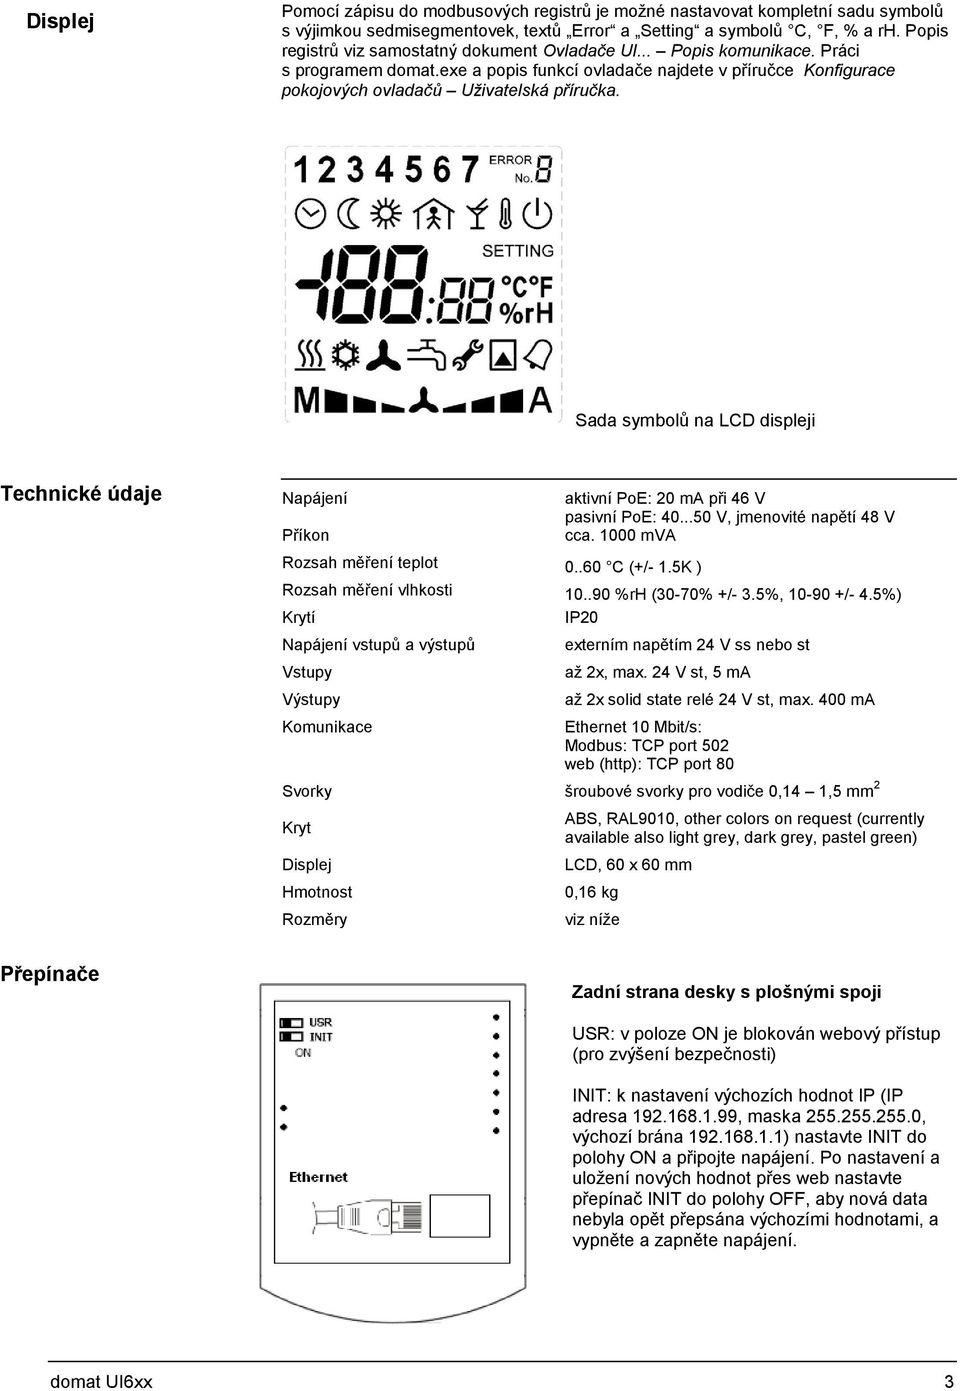 Sada symbolů na LCD displeji Technické údaje Napájení Příkon aktivní PoE: 20 ma při 46 V pasivní PoE: 40...50 V, jmenovité napětí 48 V cca. 1000 mva Rozsah měření teplot 0..60 C (+/- 1.